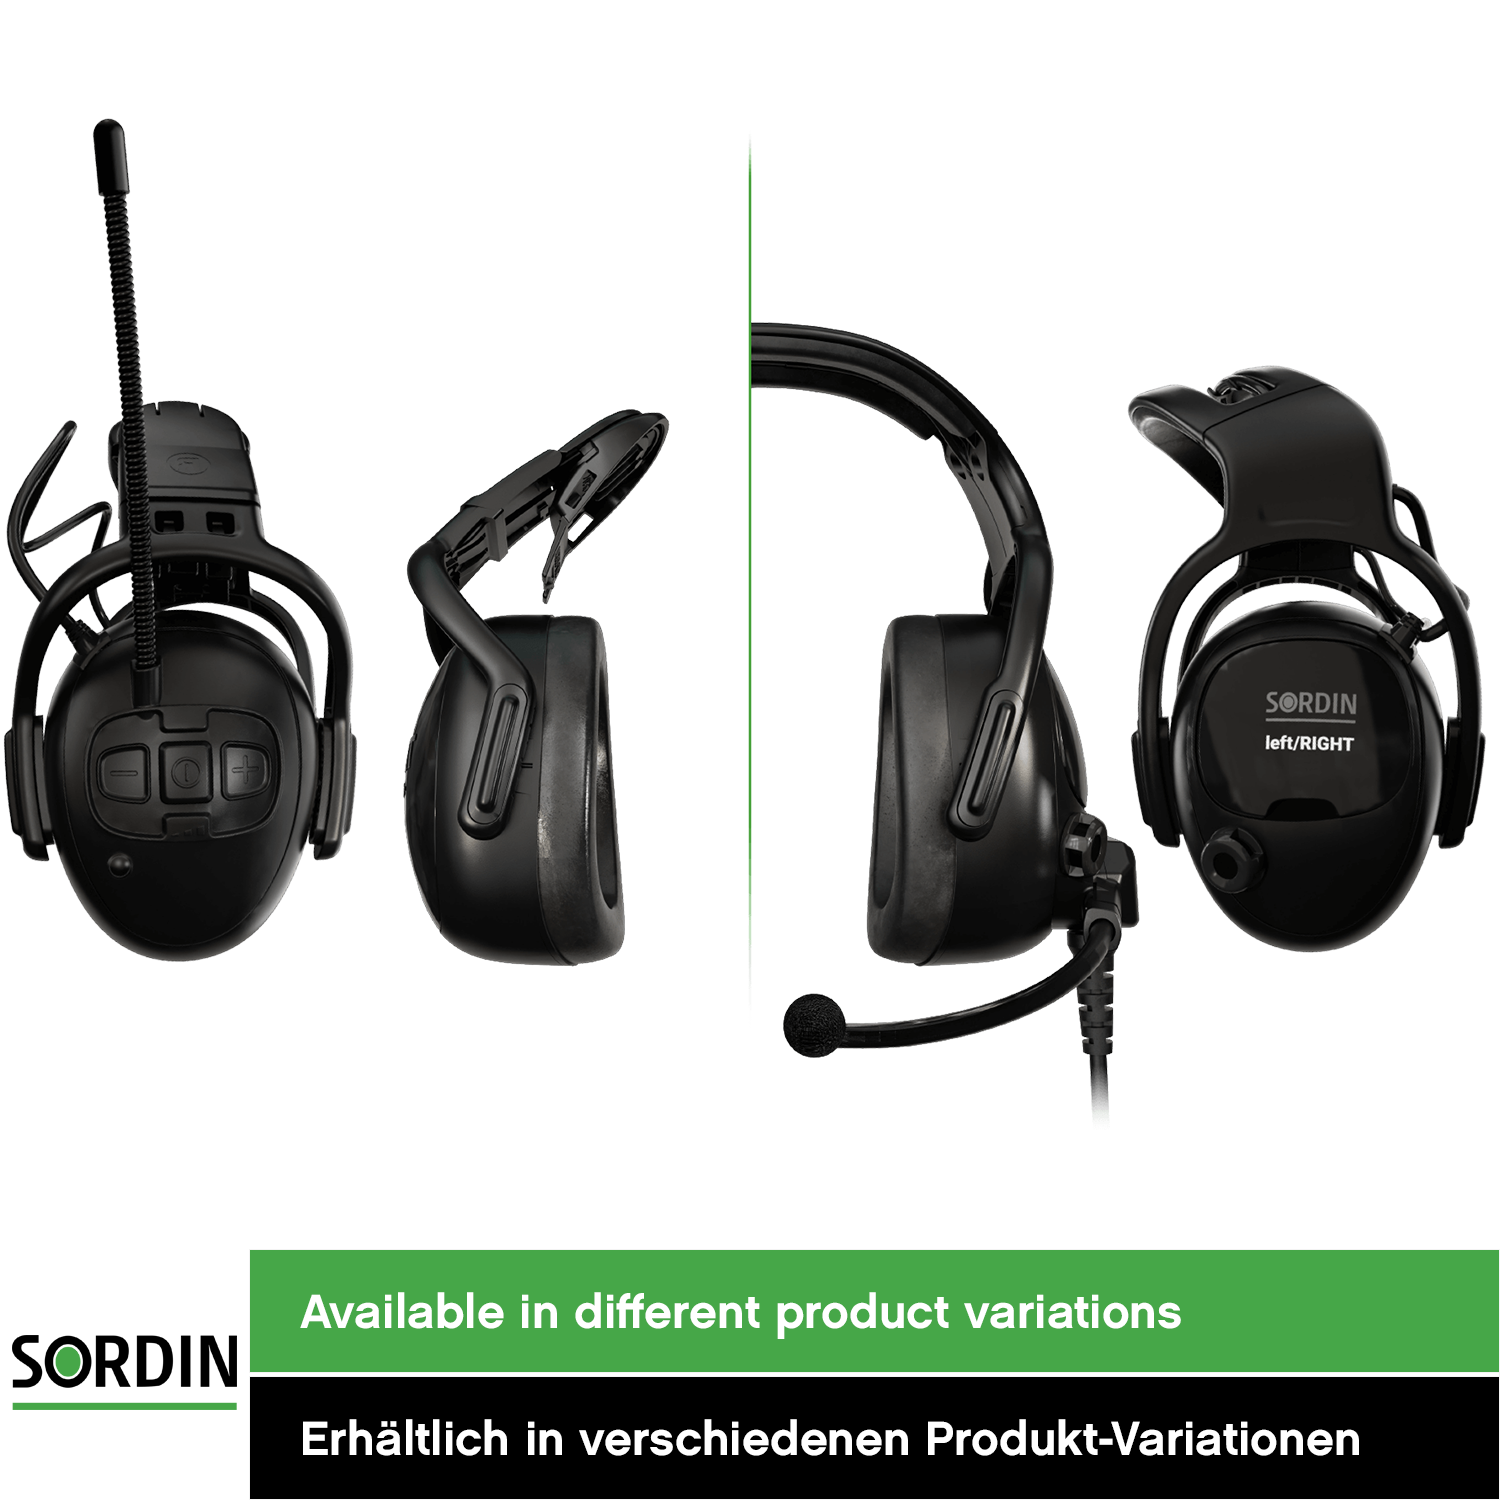 Sordin left/RIGHT high Kapsel-Gehörschutz - Ohrenschützer mit 33 dB SNR - passiver Gehörschützer für die Arbeit